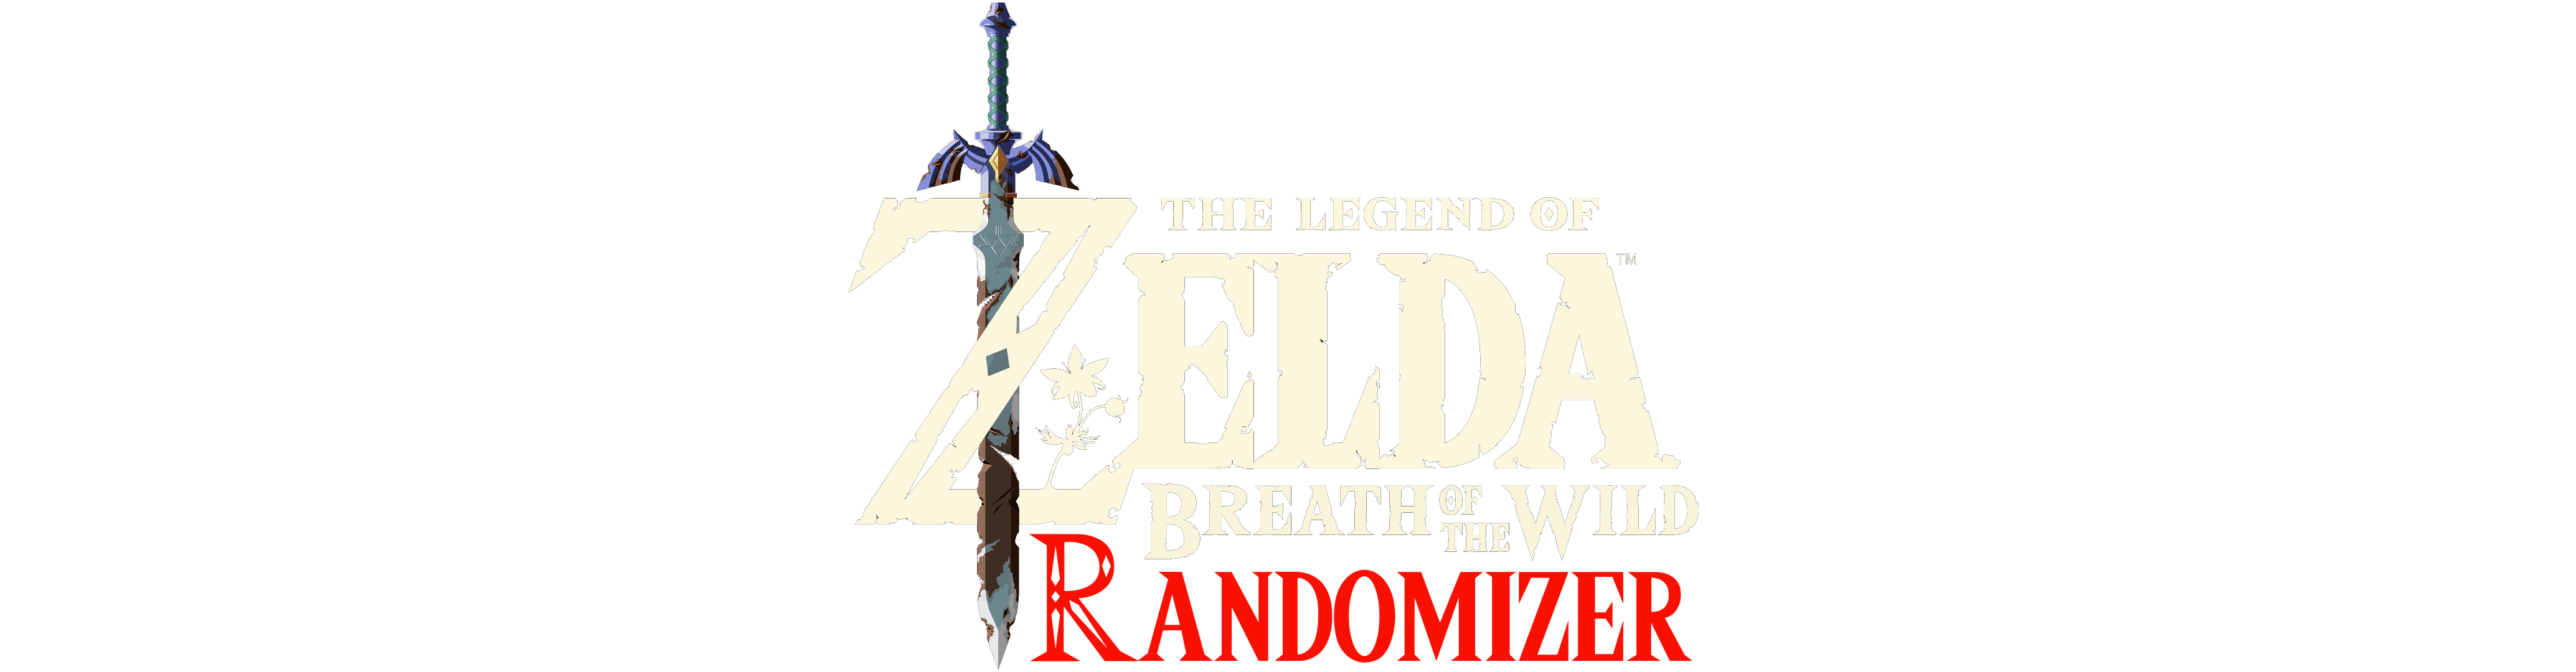 The Legend of Zelda: Breath of the Wild Randomizer